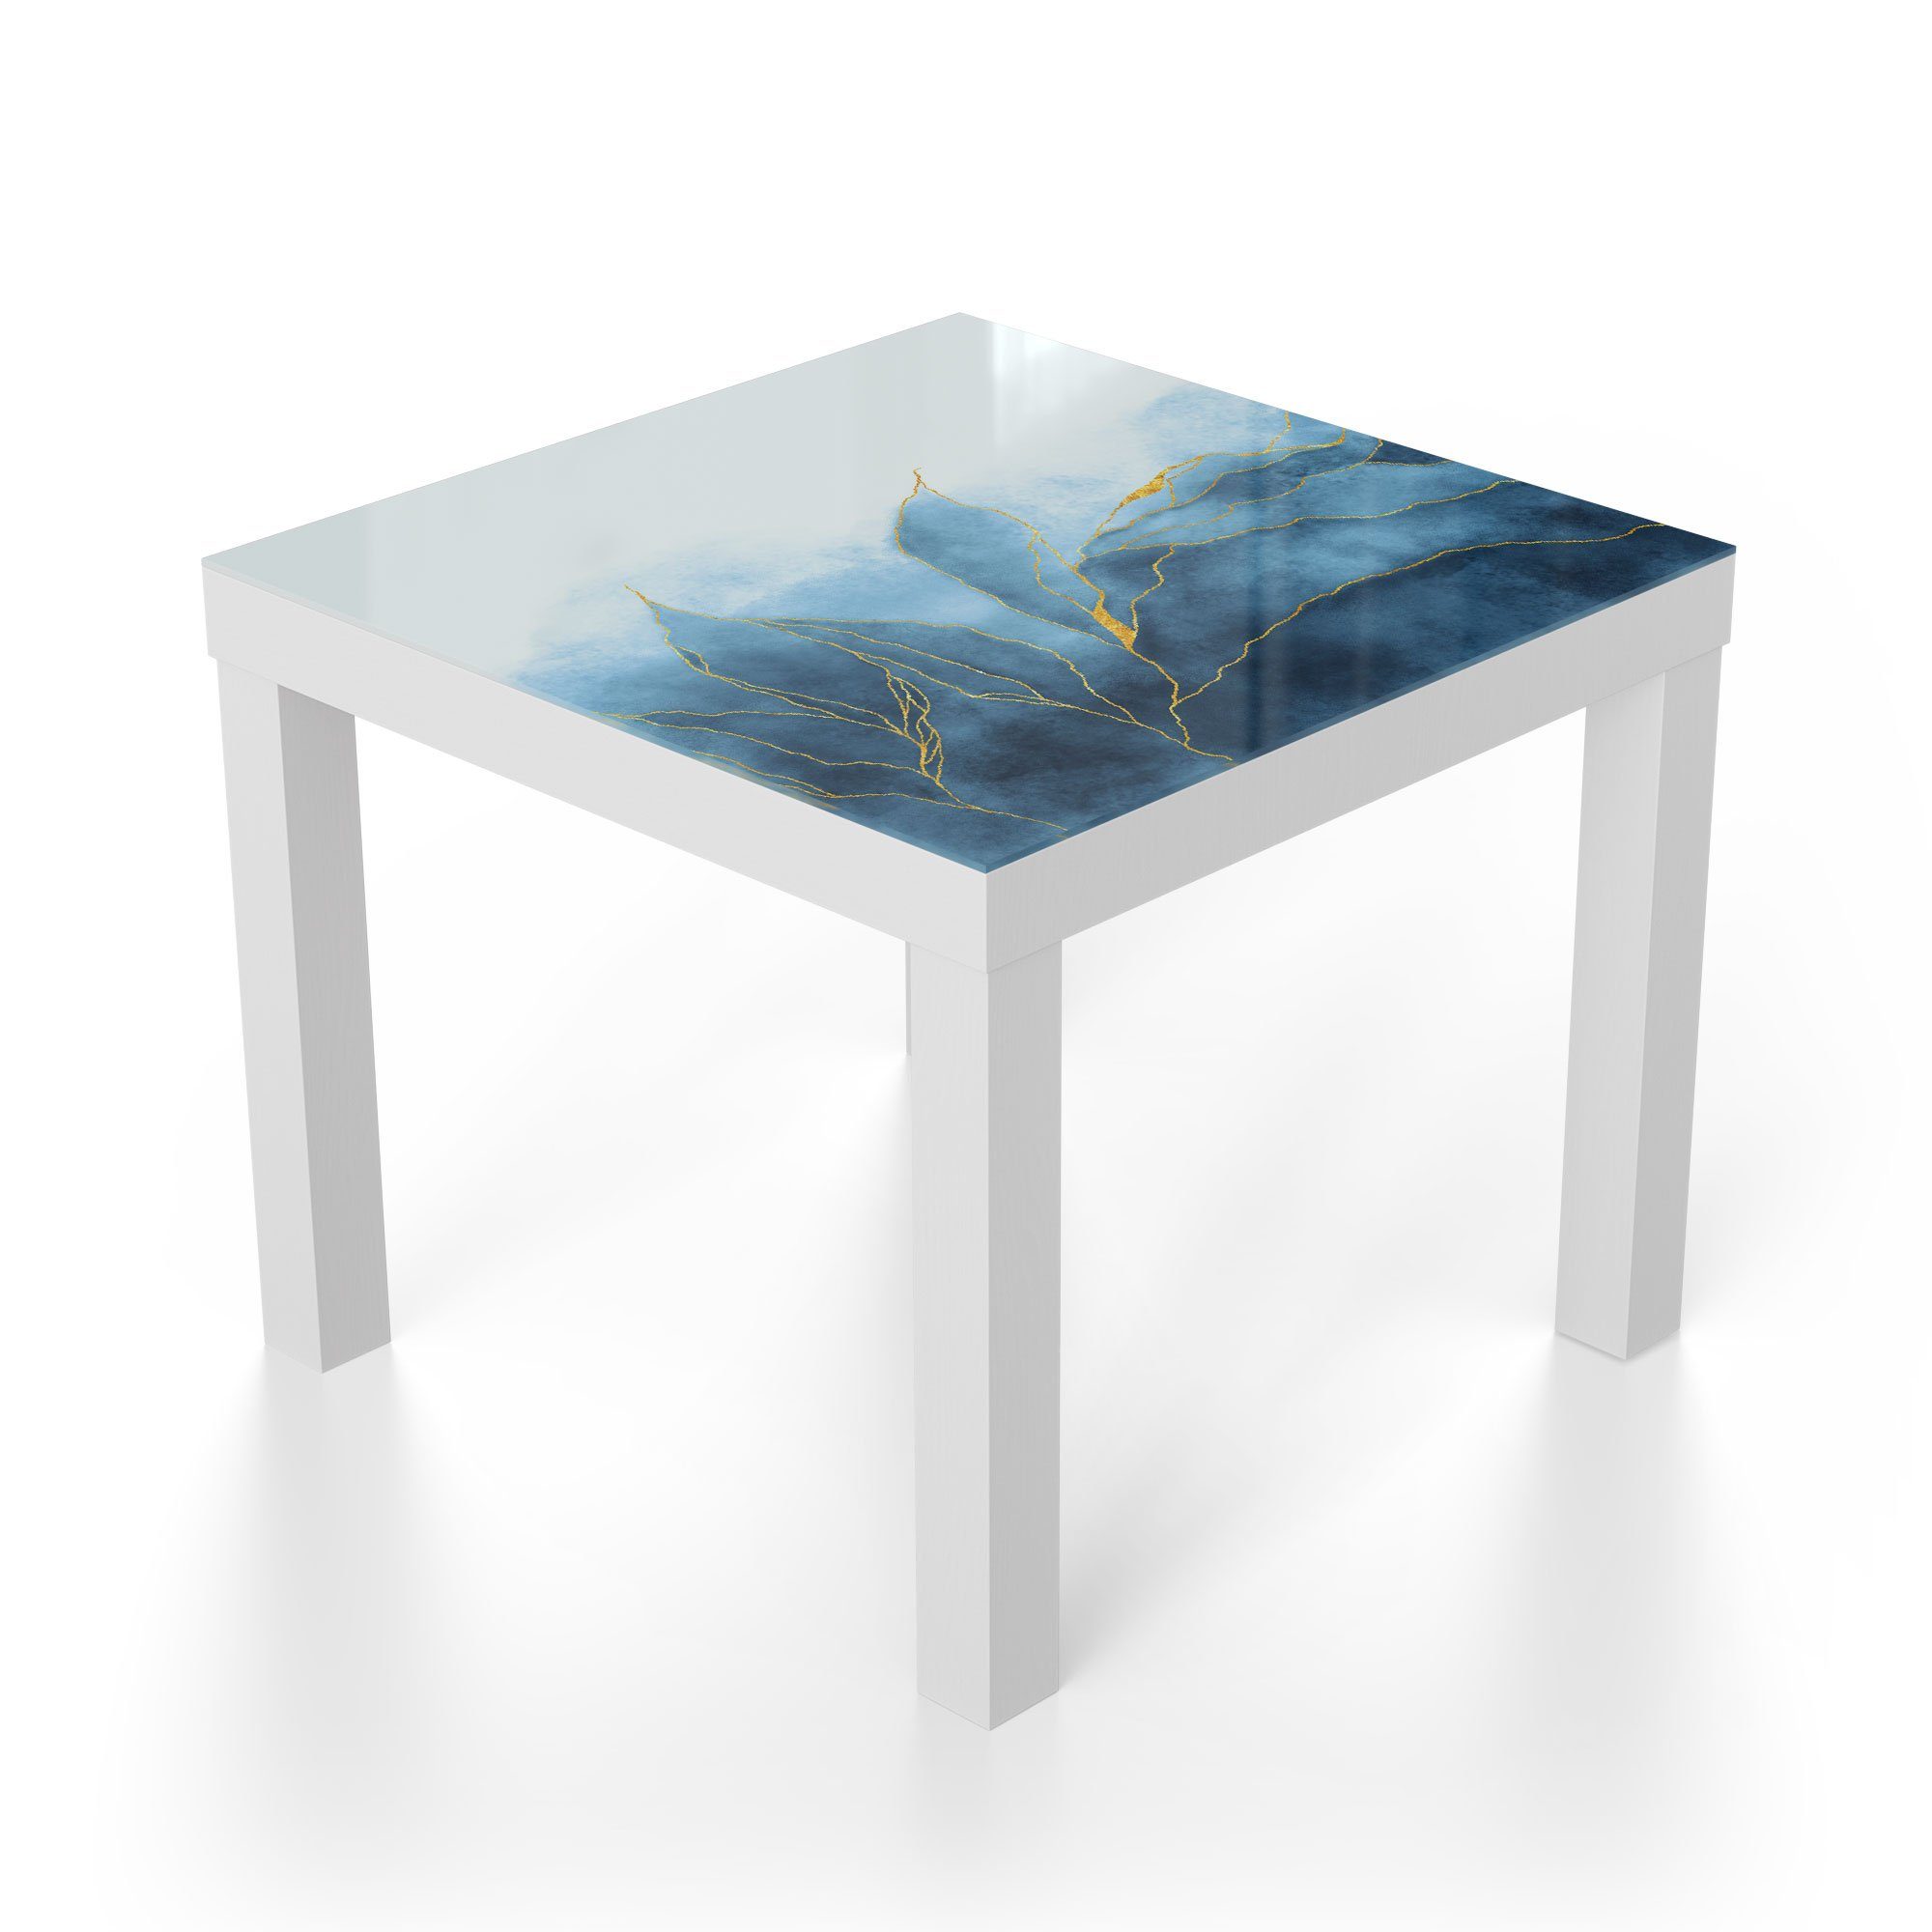 DEQORI Wasserfarbverlauf', Glas modern Weiß Beistelltisch Glastisch Couchtisch 'Blauer